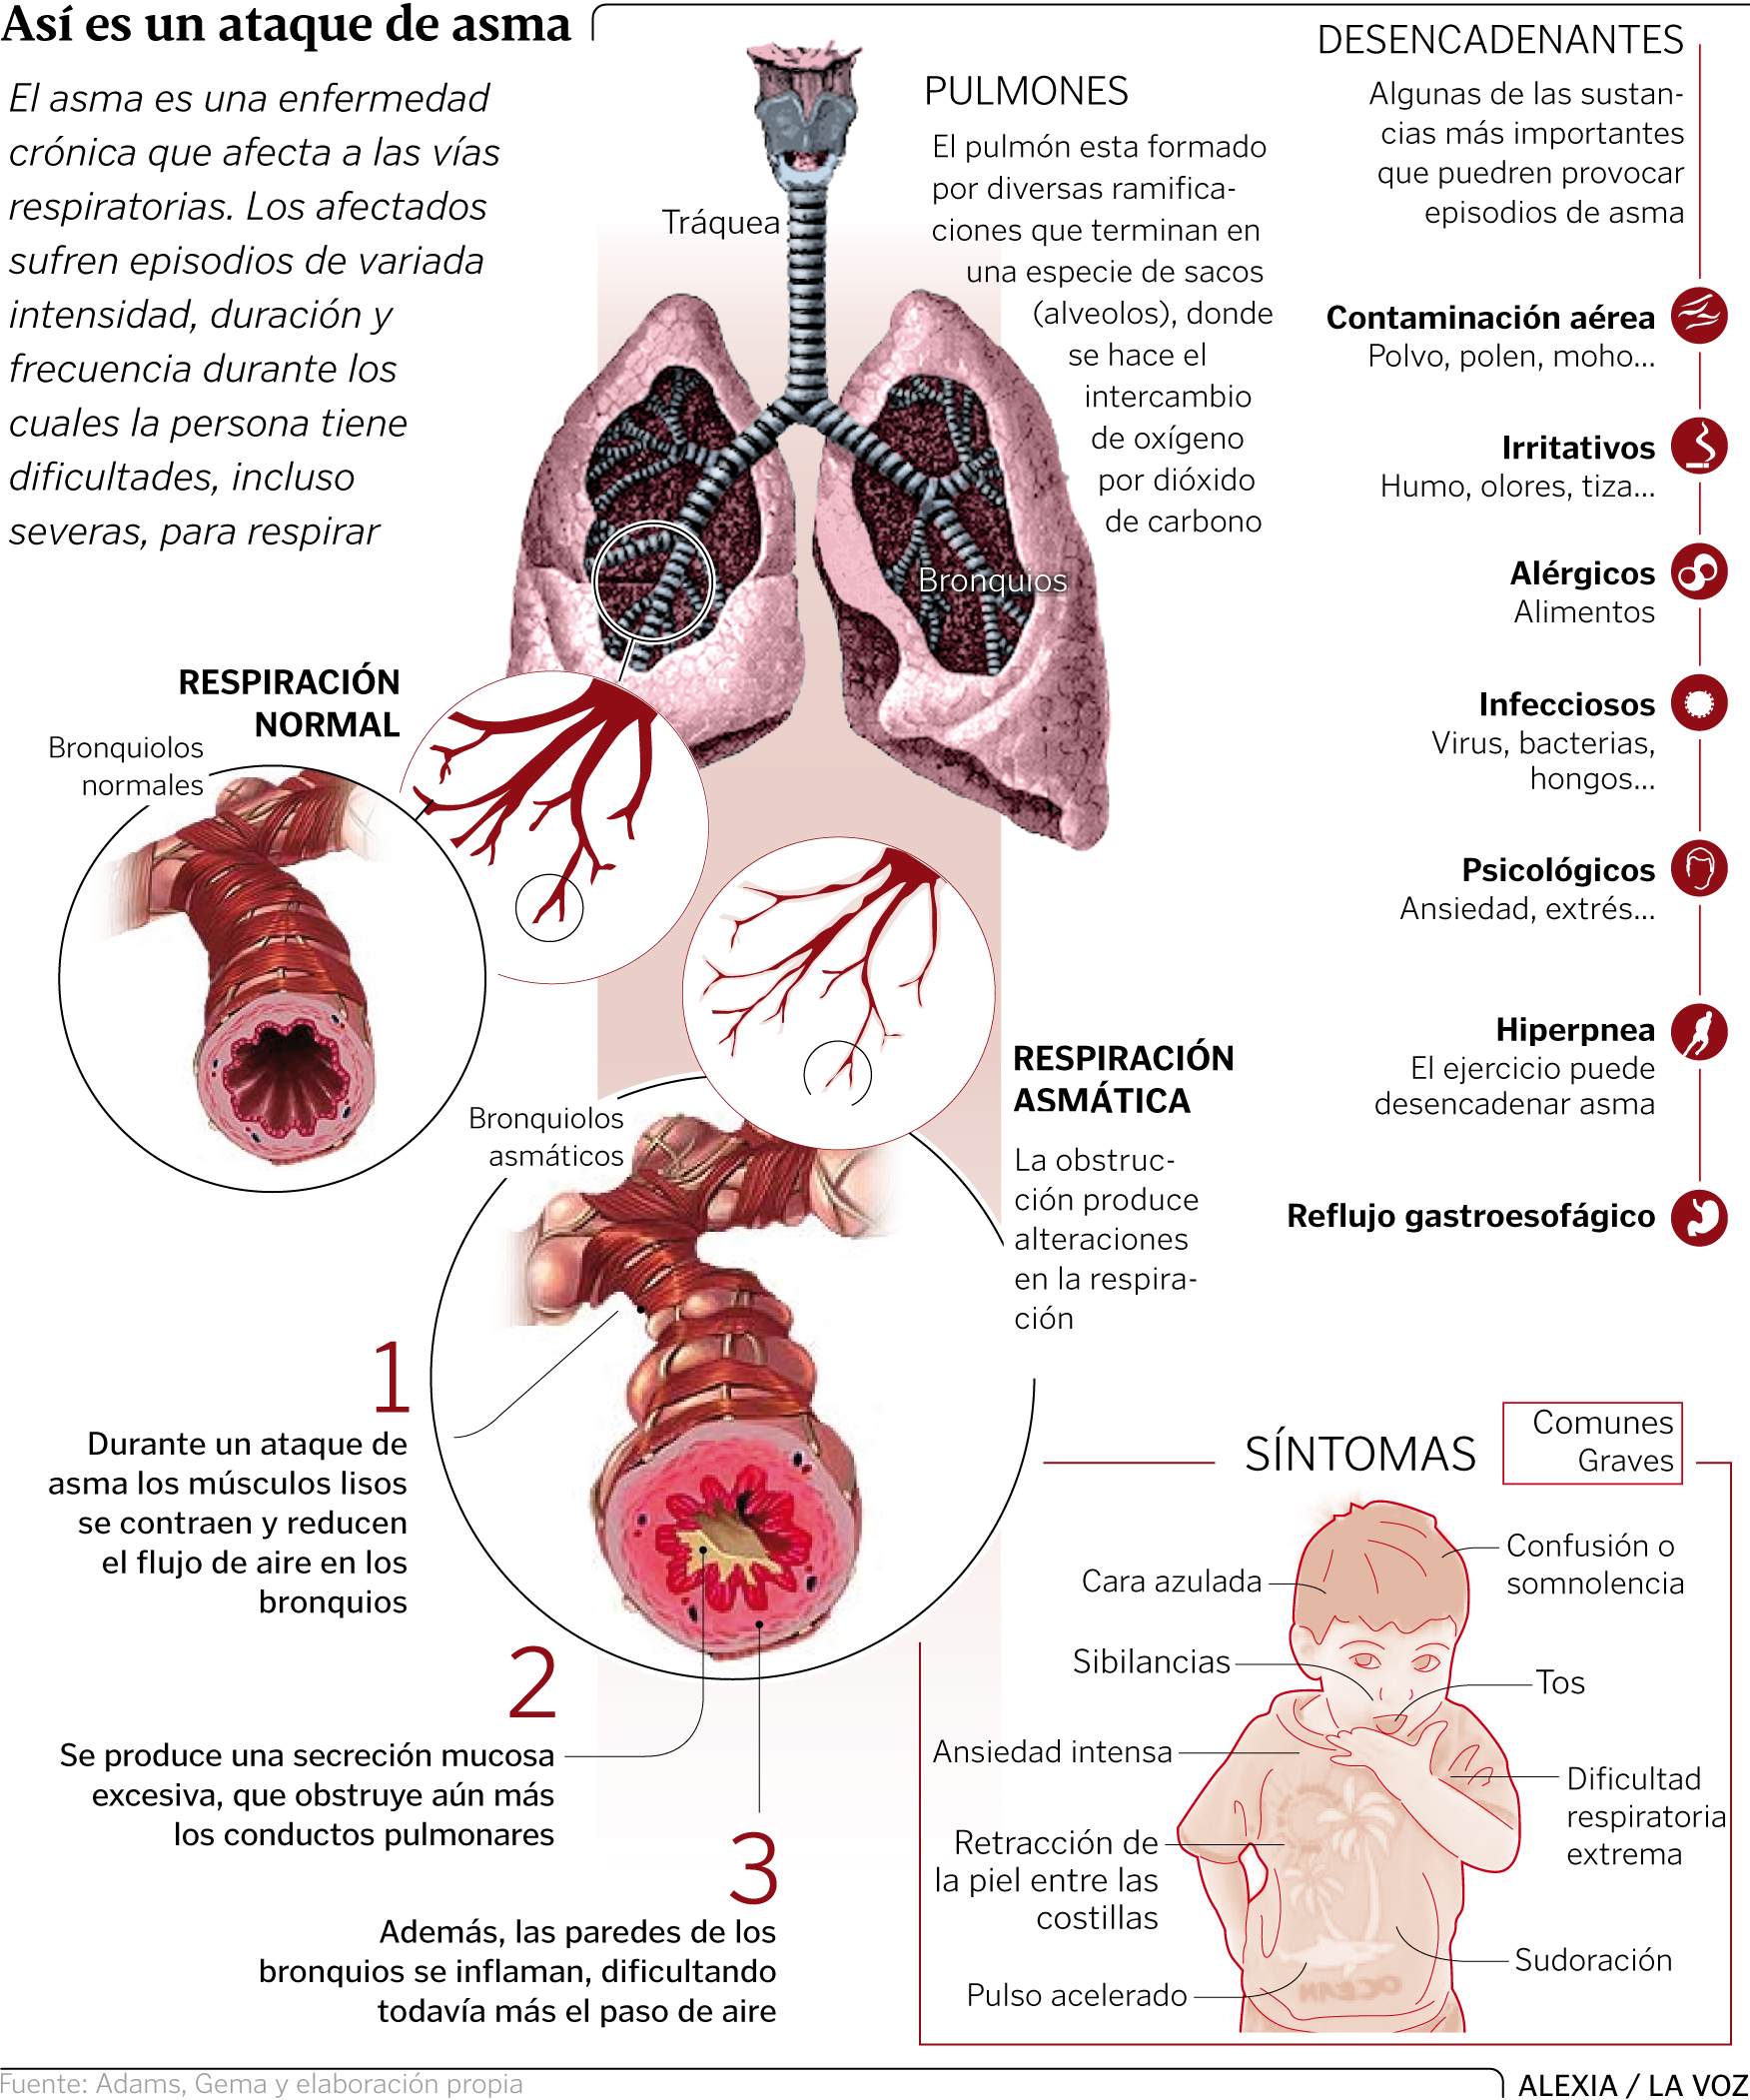 Así es un ataque de asma (Infografía, La Voz de Galicia)